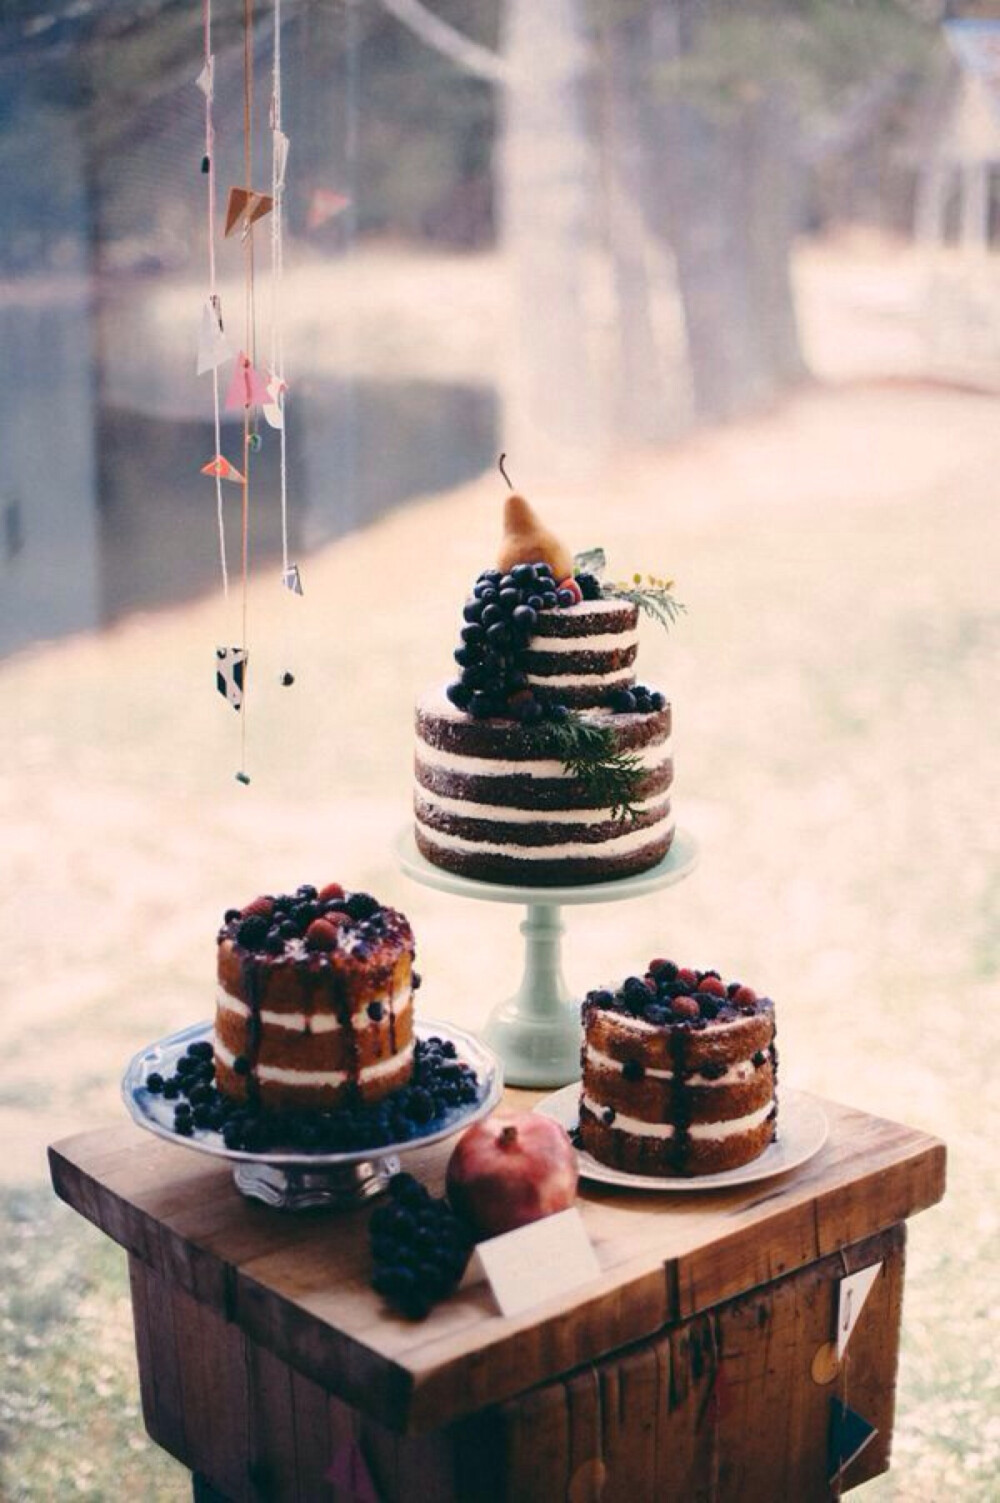 “裸蛋糕”通常只简单的搭配鲜花、绿叶和水果装扮即可，没有翻糖照样美！田园婚礼甜点专属裸蛋糕，充满清新的味道。